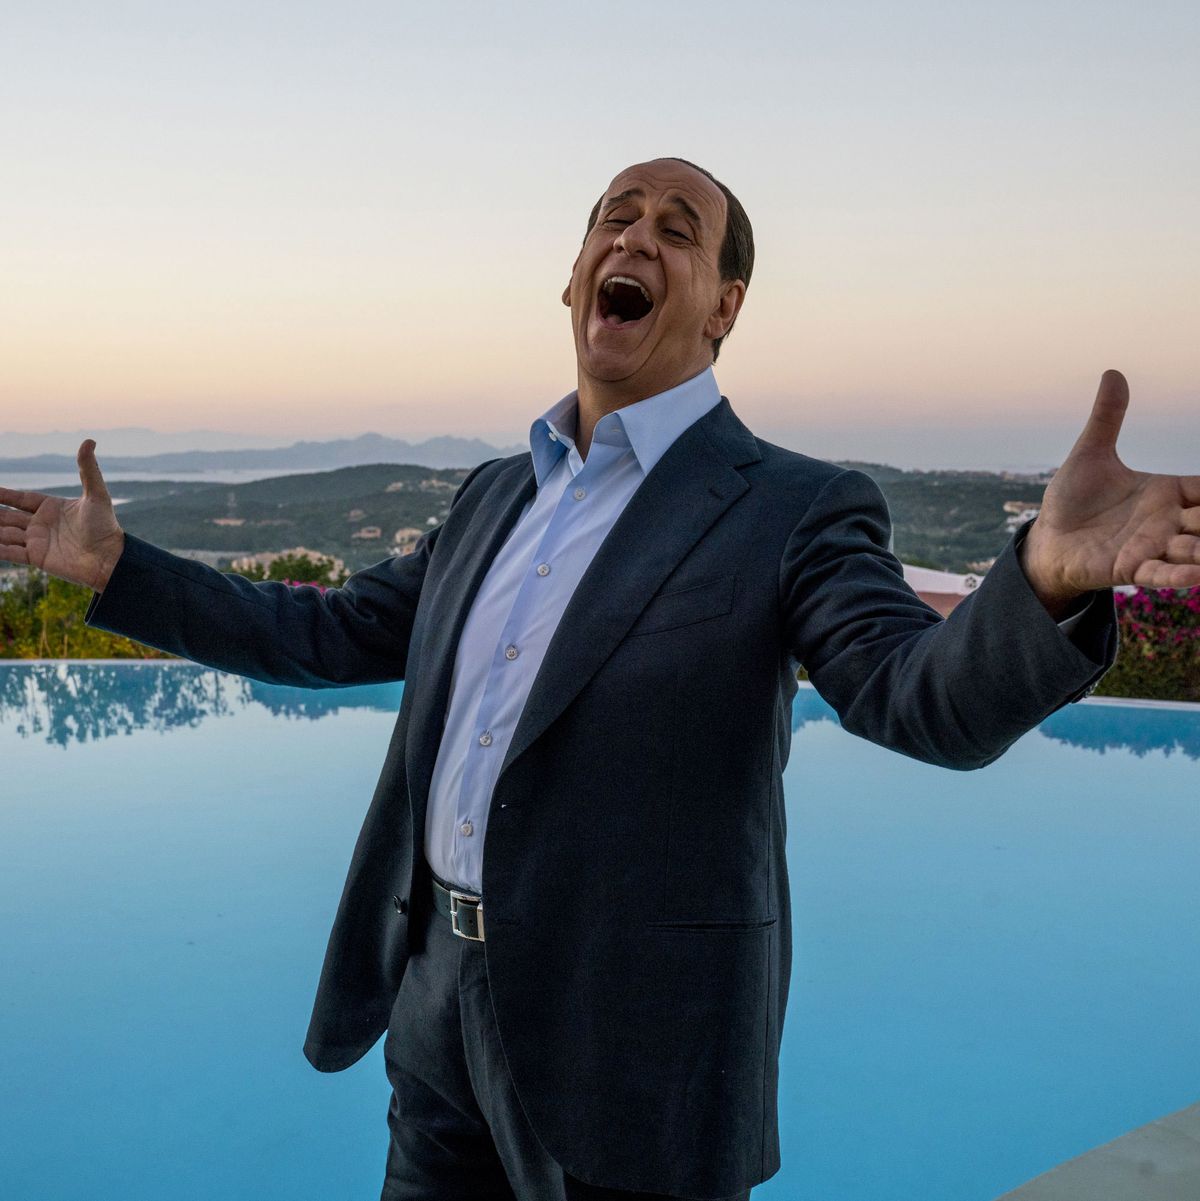 Loro Movie Review Paolo Sorrentino S Portrait Of Berlusconi